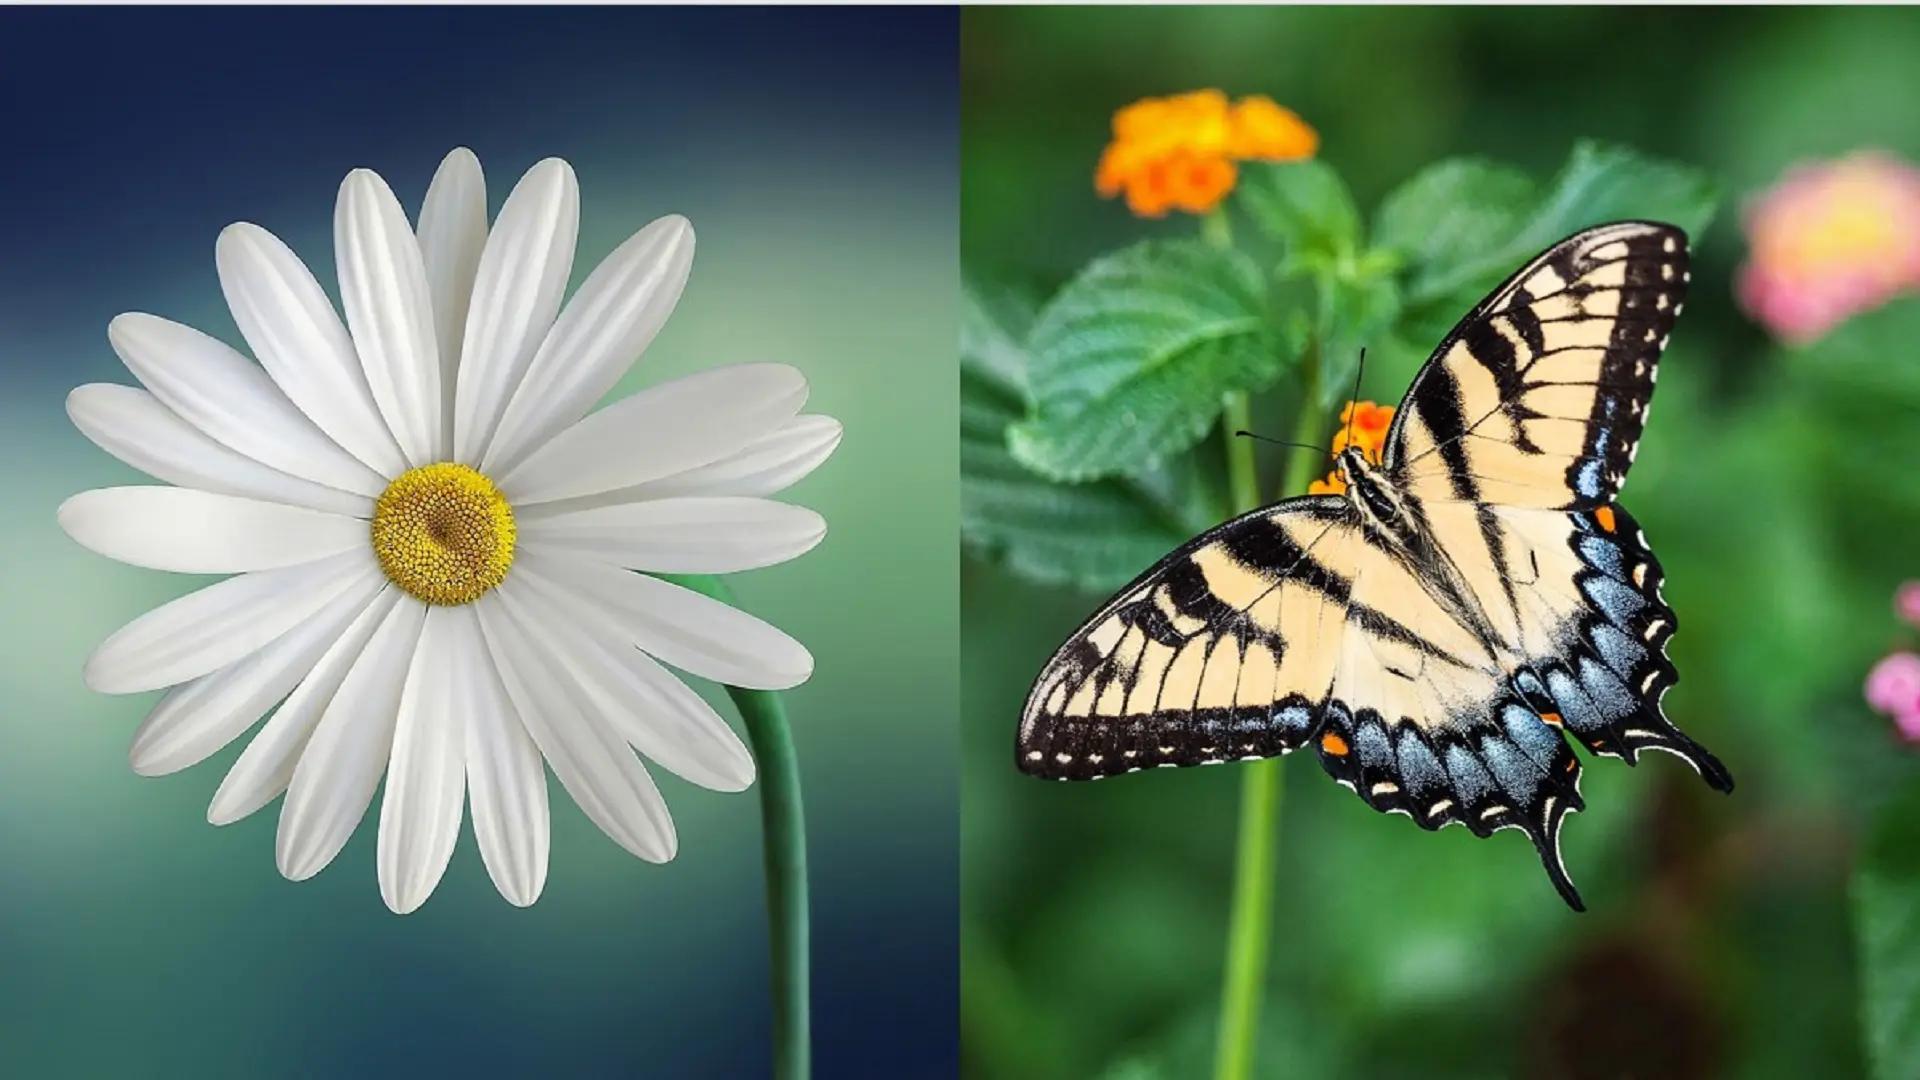 Fjäril och blomma som symboliserar symmetri